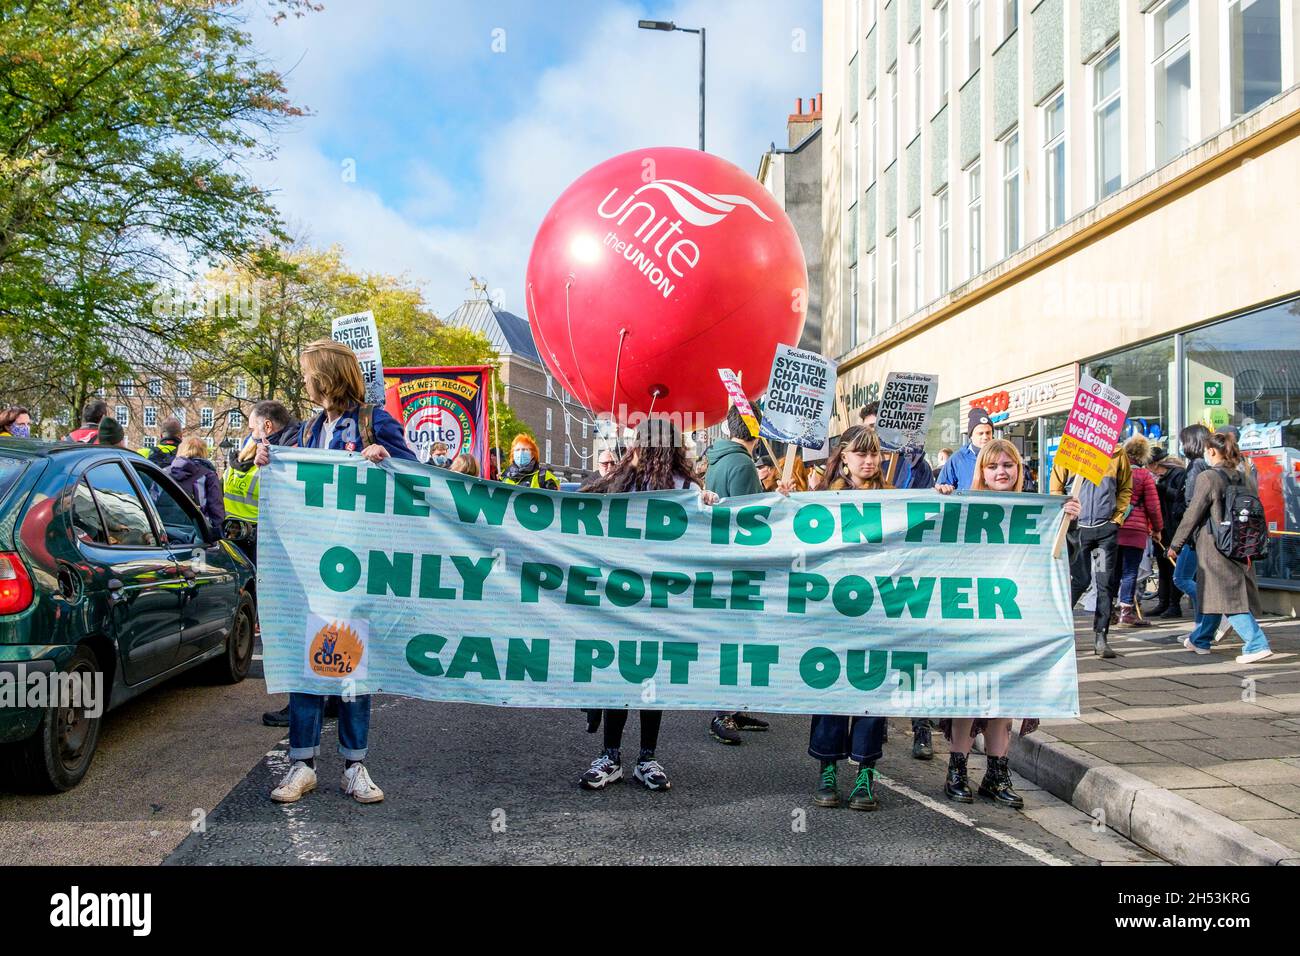 Bristol, Royaume-Uni, 6 novembre 2021.Des manifestants portant des banderoles et des pancartes sur le changement climatique sont photographiés lorsqu'ils prennent part à une marche de protestation contre le changement climatique dans le centre de Bristol.Cette manifestation était l'une des centaines de personnes qui se sont déroulées dans le monde aujourd'hui alors que les gens sont descendus dans la rue pour pousser les dirigeants mondiaux à agir pendant que leurs négociateurs se rencontraient à Glasgow lors de la Conférence des Nations Unies sur les changements climatiques de la COP 2021.Credit: Lynchpics/Alamy Live News Banque D'Images